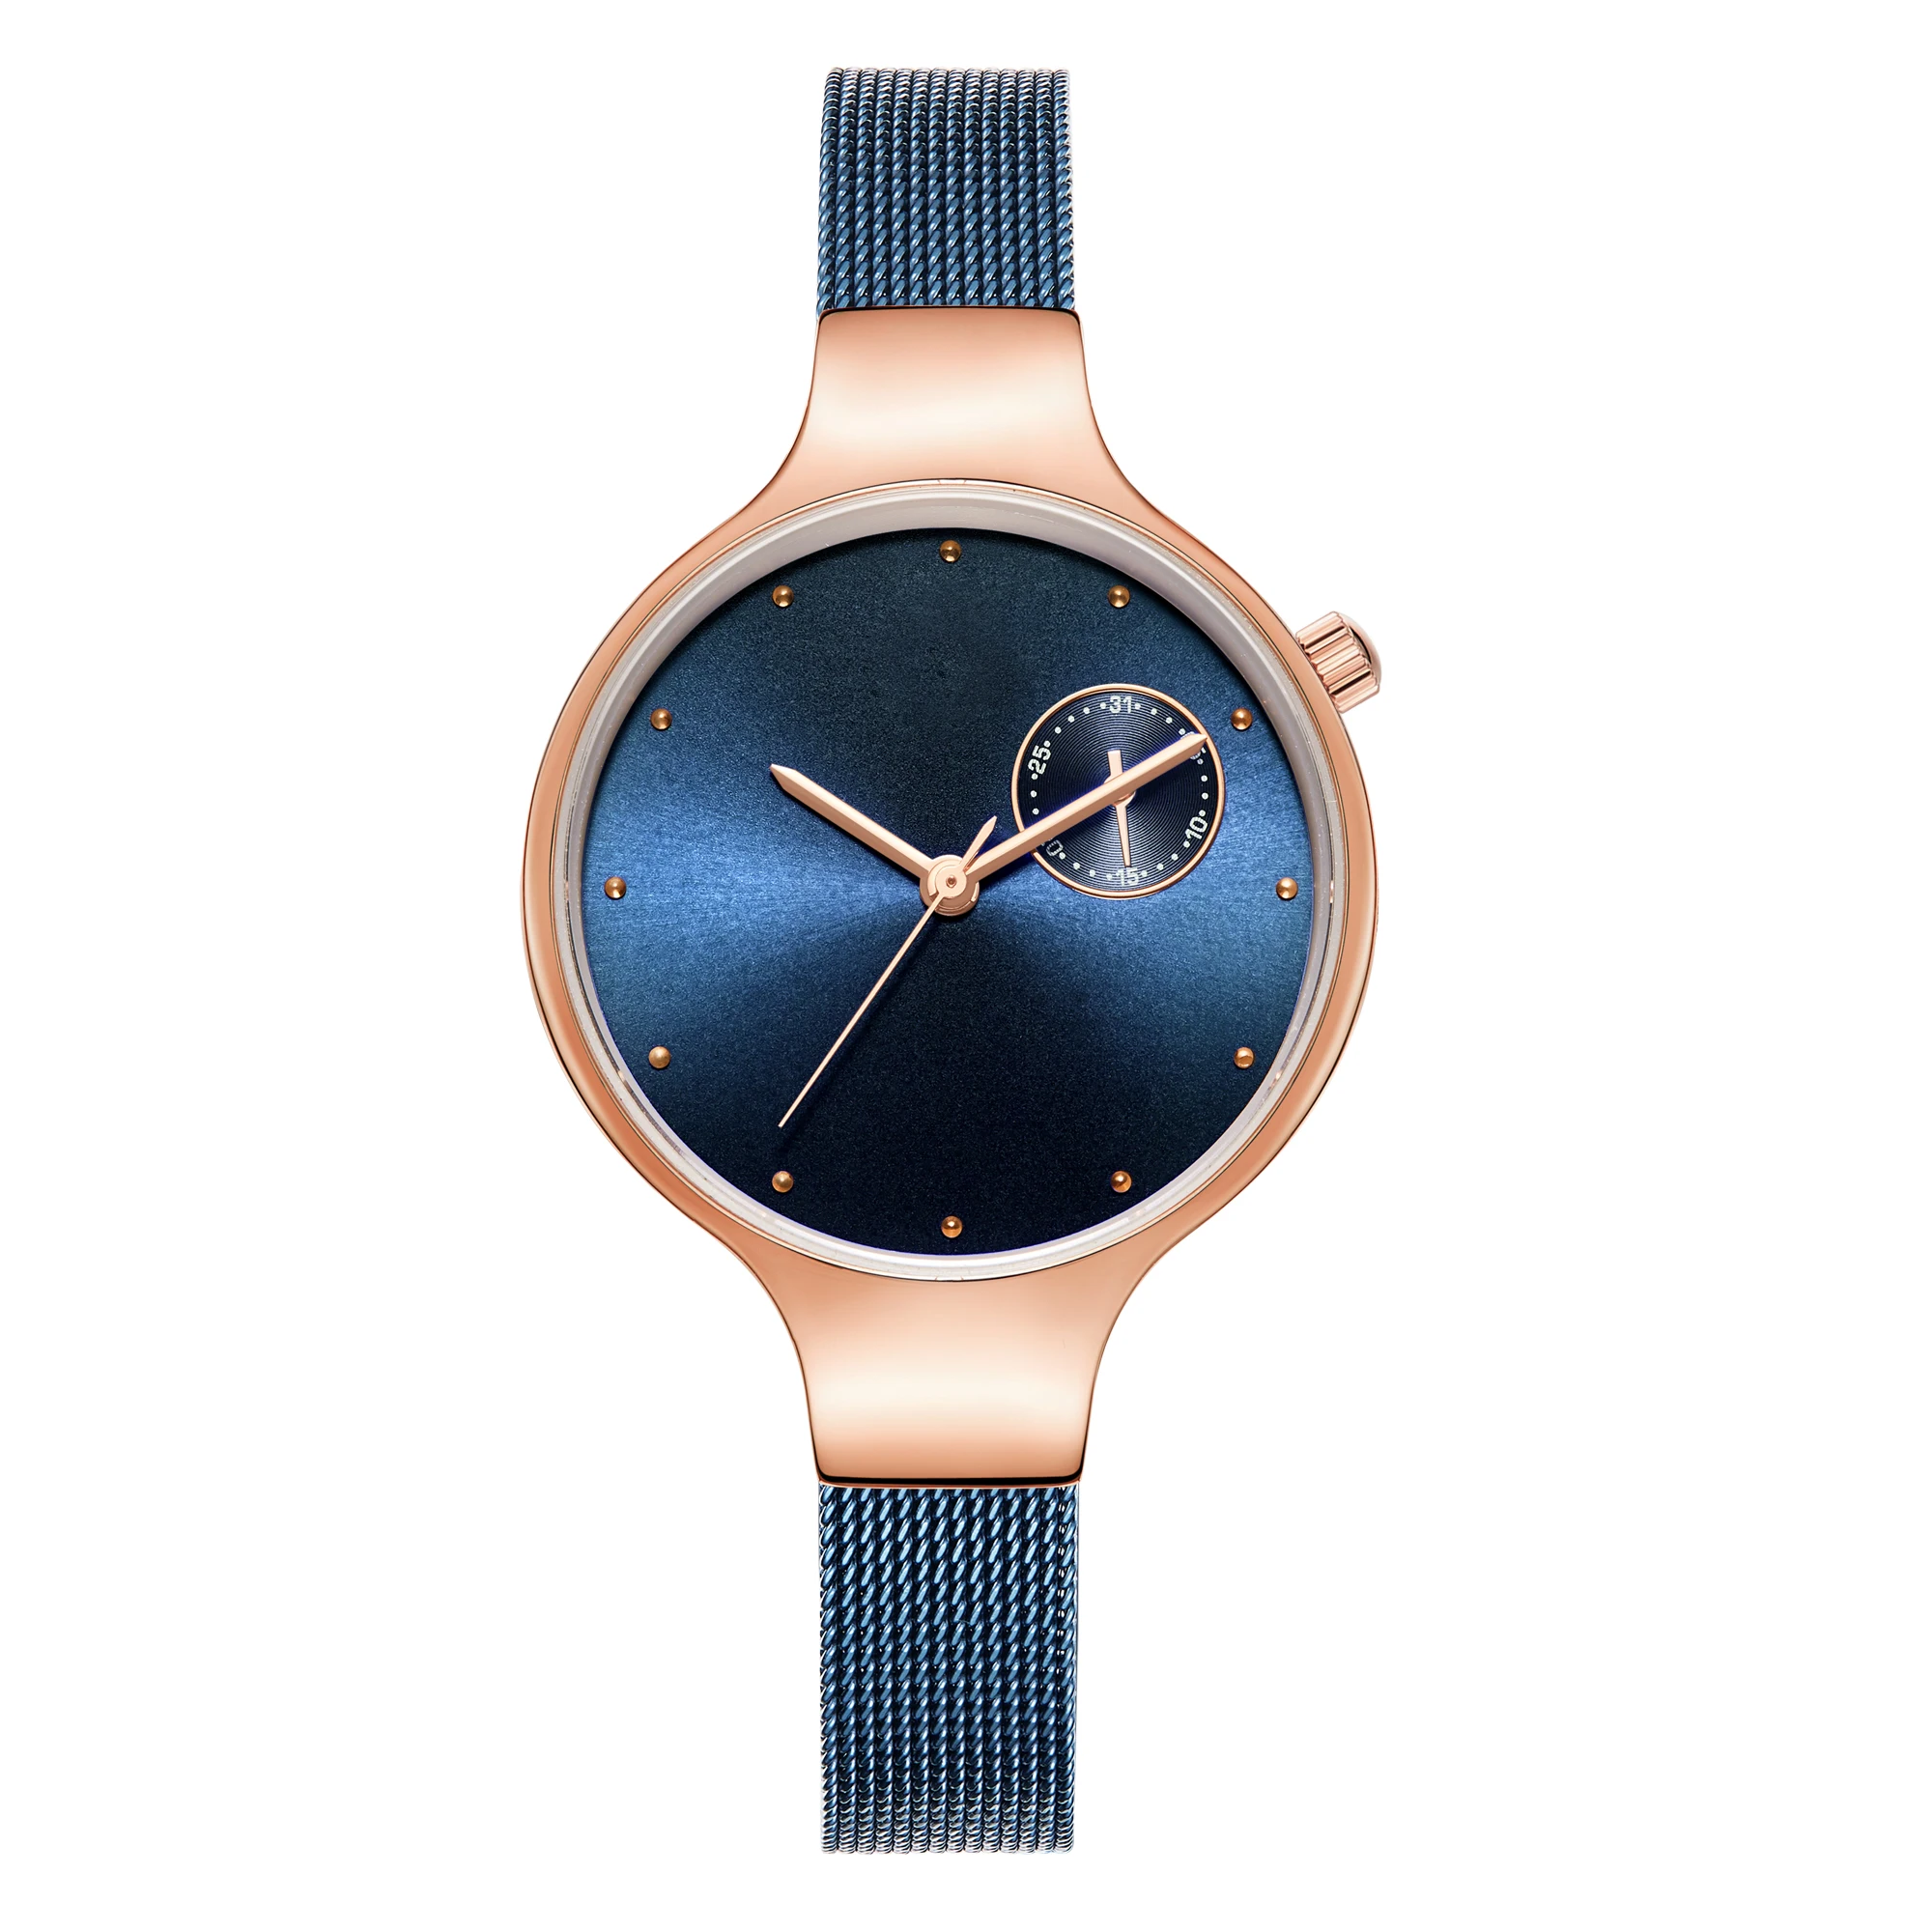 To My Mum автоматические кварцевые Бизнес водонепроницаемые женские часы индивидуальные гравированные часы Роскошные модные синие наручные часы